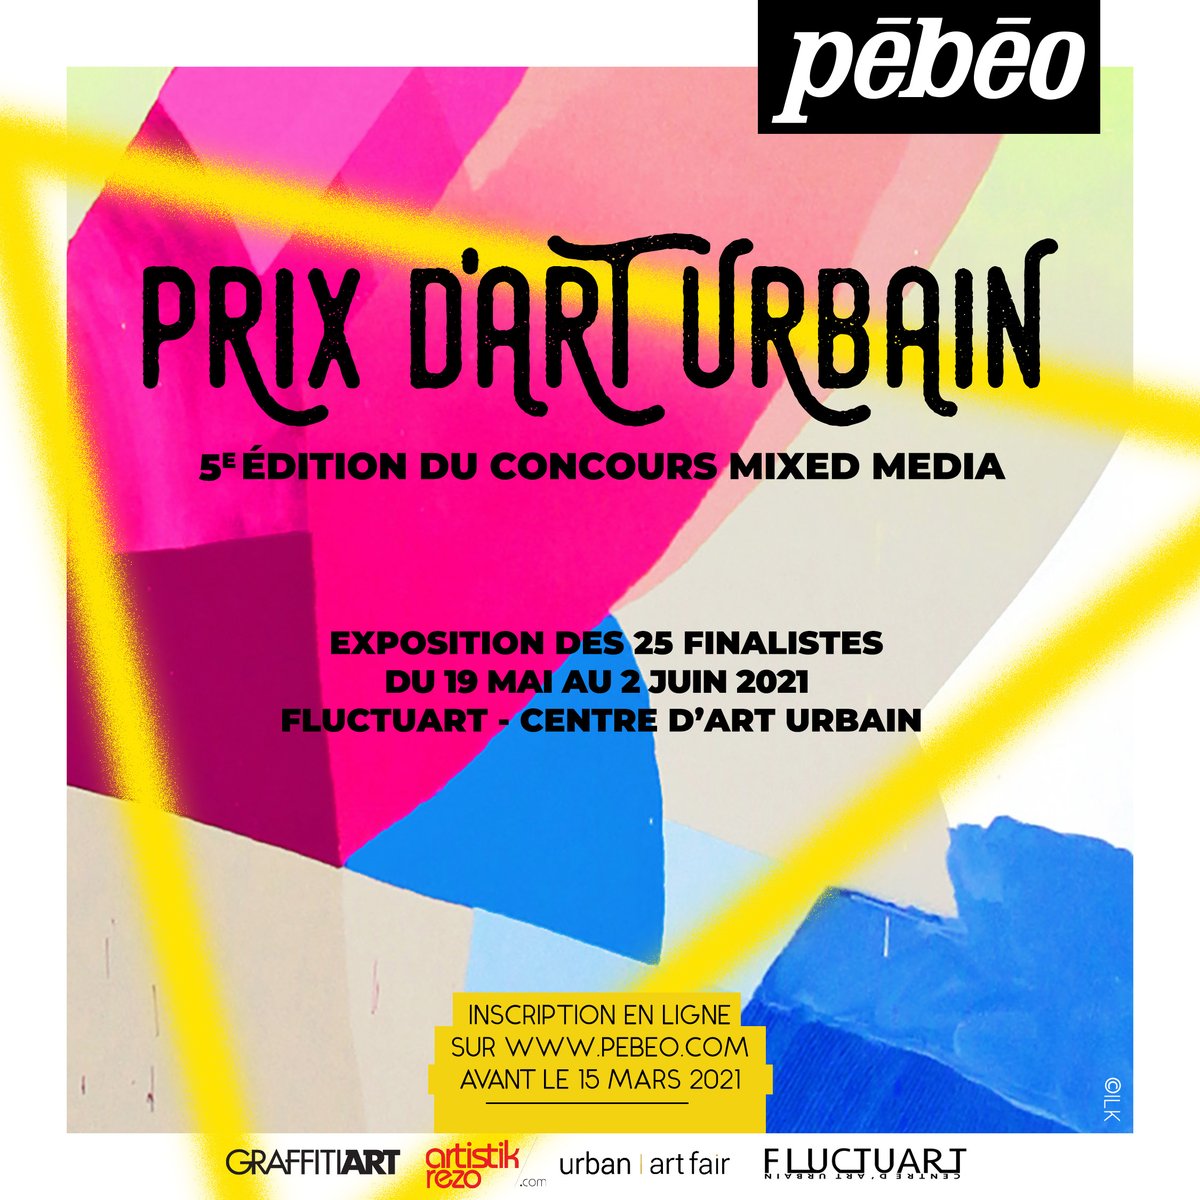 La 5e édition du concours international @Pebeopaints est lancée ! Le thème de cette année : l’art urbain. En mai 2021 Fluctuart accueillera l'exposition des 25 finalistes pendant l’@urbanartfair. - Toutes les informations sur pebeo.com